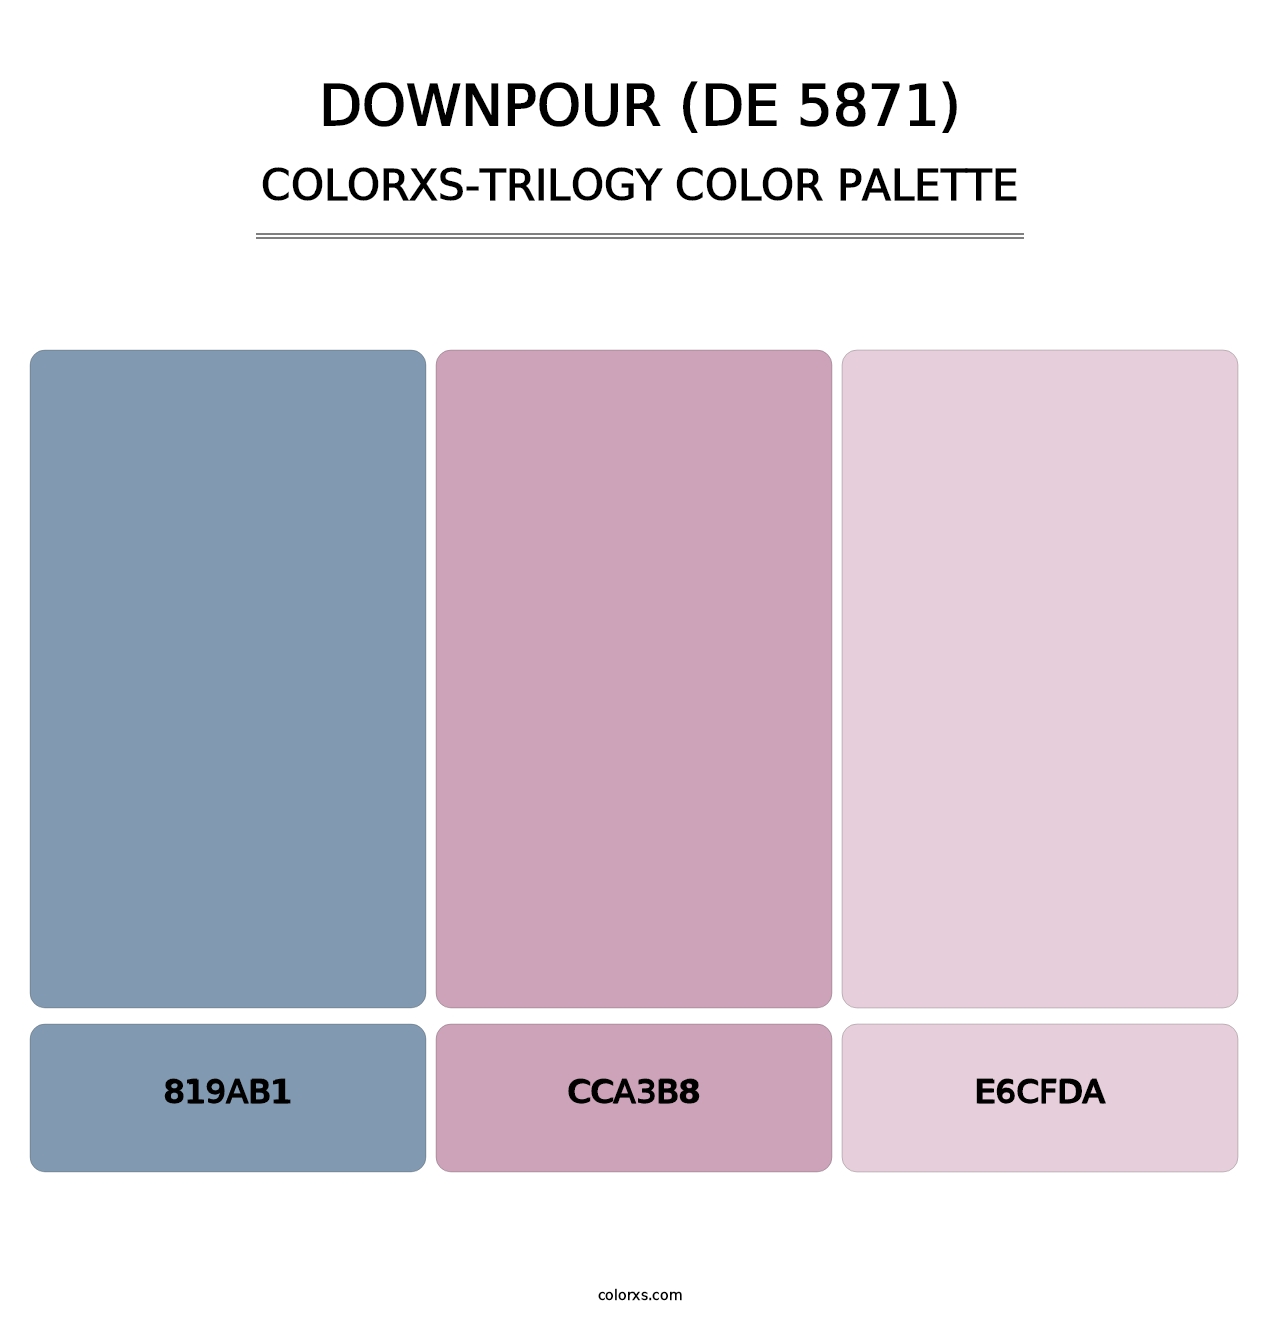 Downpour (DE 5871) - Colorxs Trilogy Palette